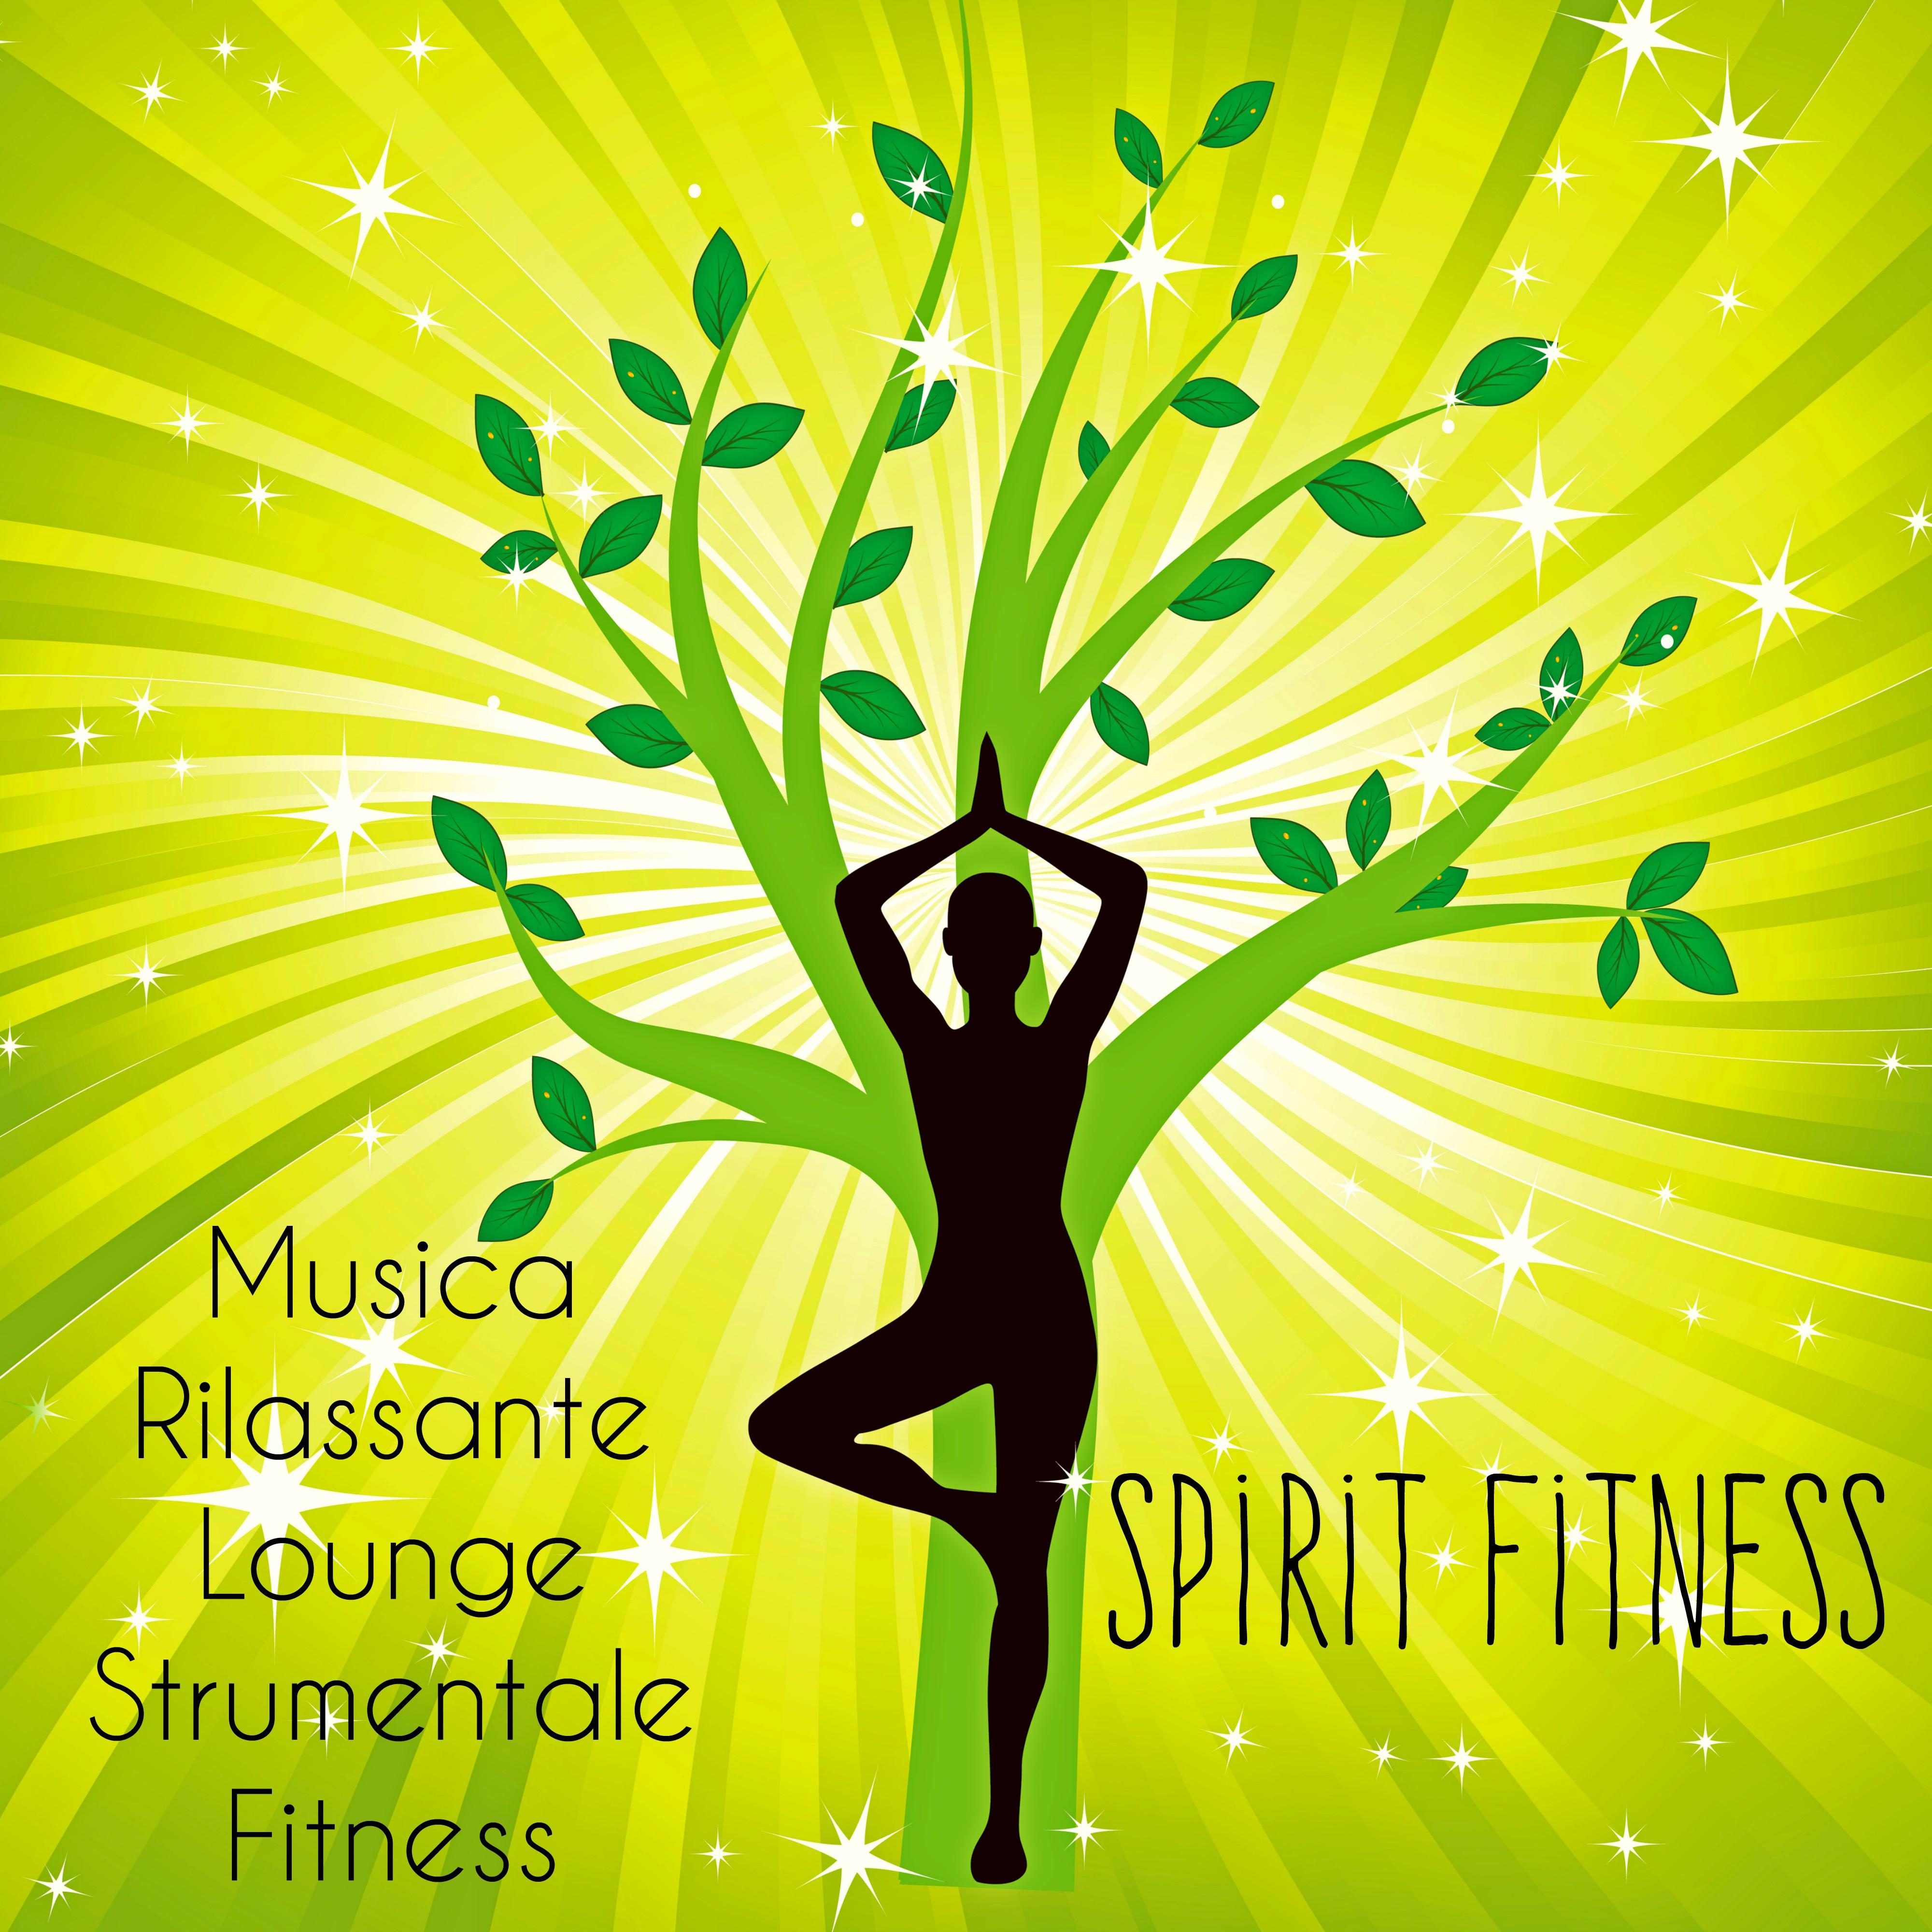 Spirit Fitness - Musica Rilassante Lounge Strumentale Fitness per Ridurre lo Stress Salute e Benessere